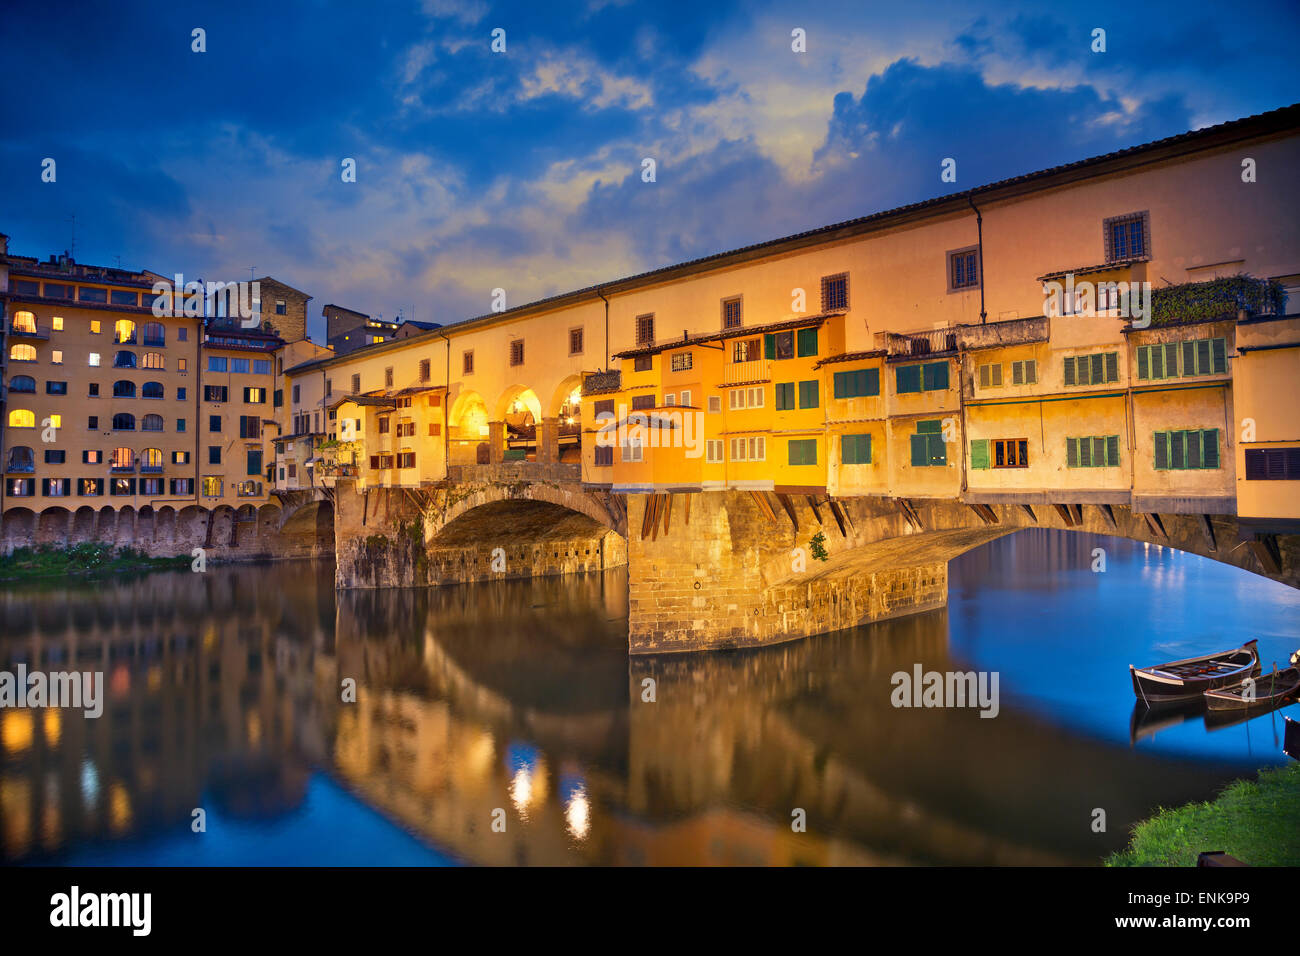 Firenze. Immagine del Ponte Vecchio a Firenze, Italia al crepuscolo. Foto Stock